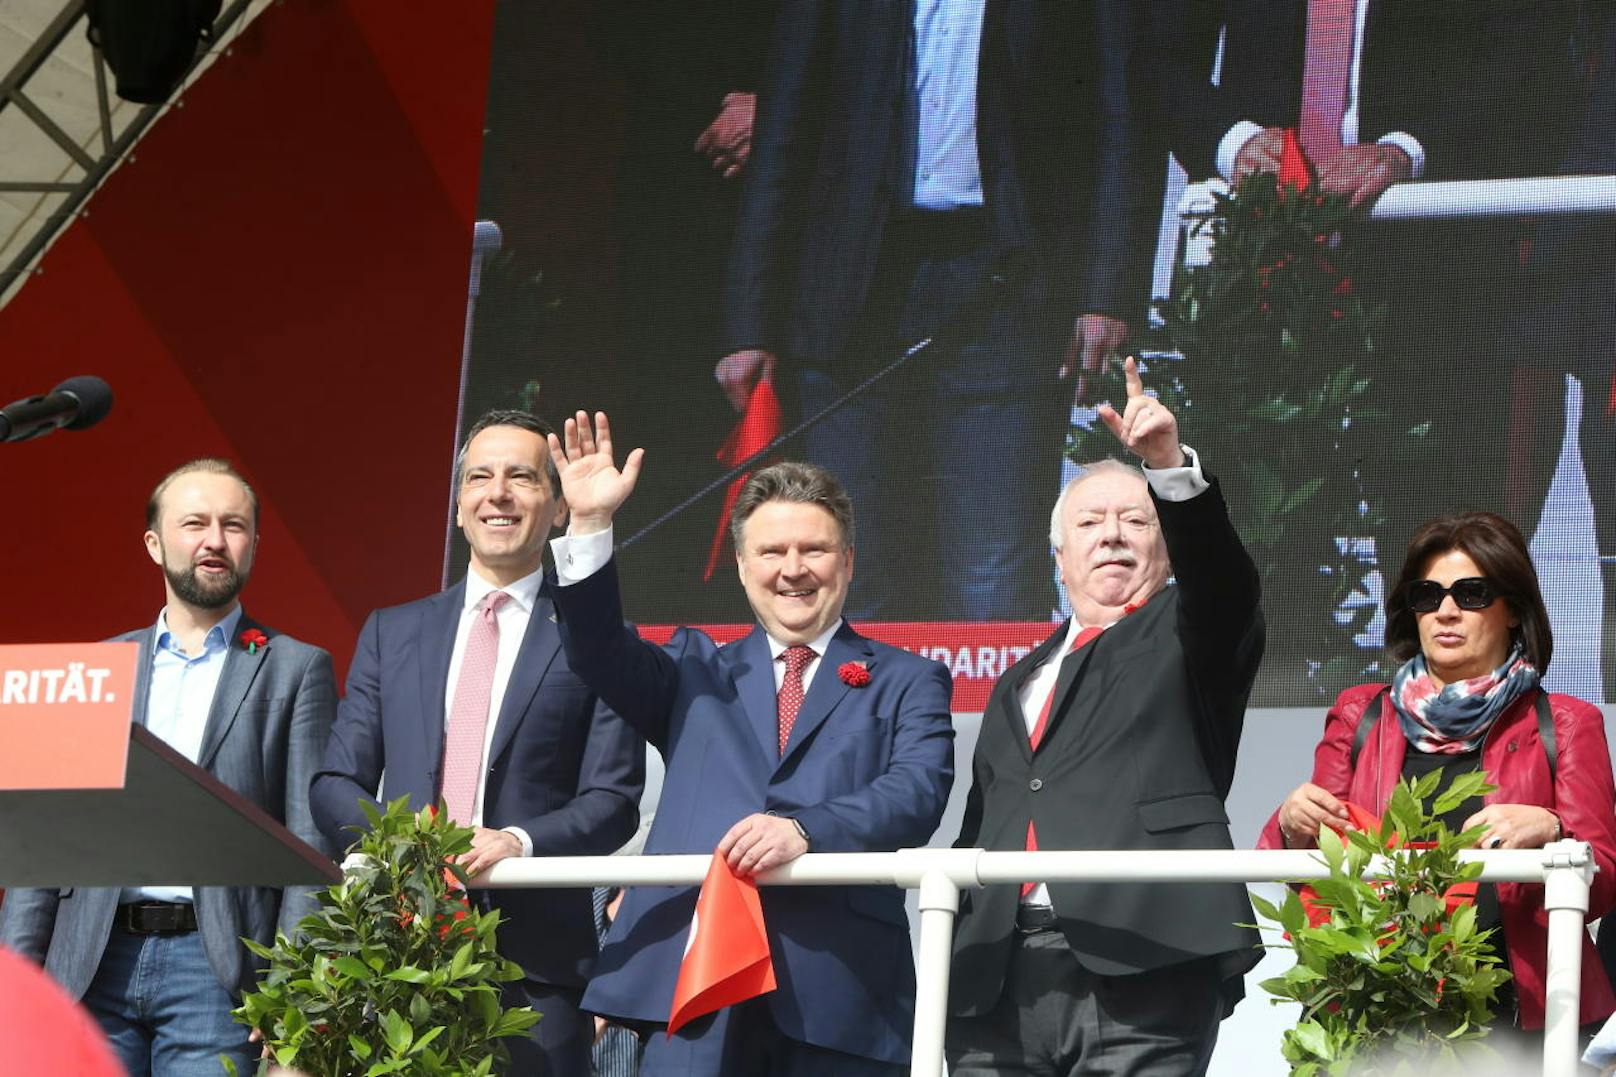 Der Wiener Bürgermeister hatte zum letzten Mal von der Festbühne am Rathausplatz eine Rede gehalten und danach das Wort an den neuen Wiener SPÖ-Vorsitzenden Michael Ludwig übergeben.